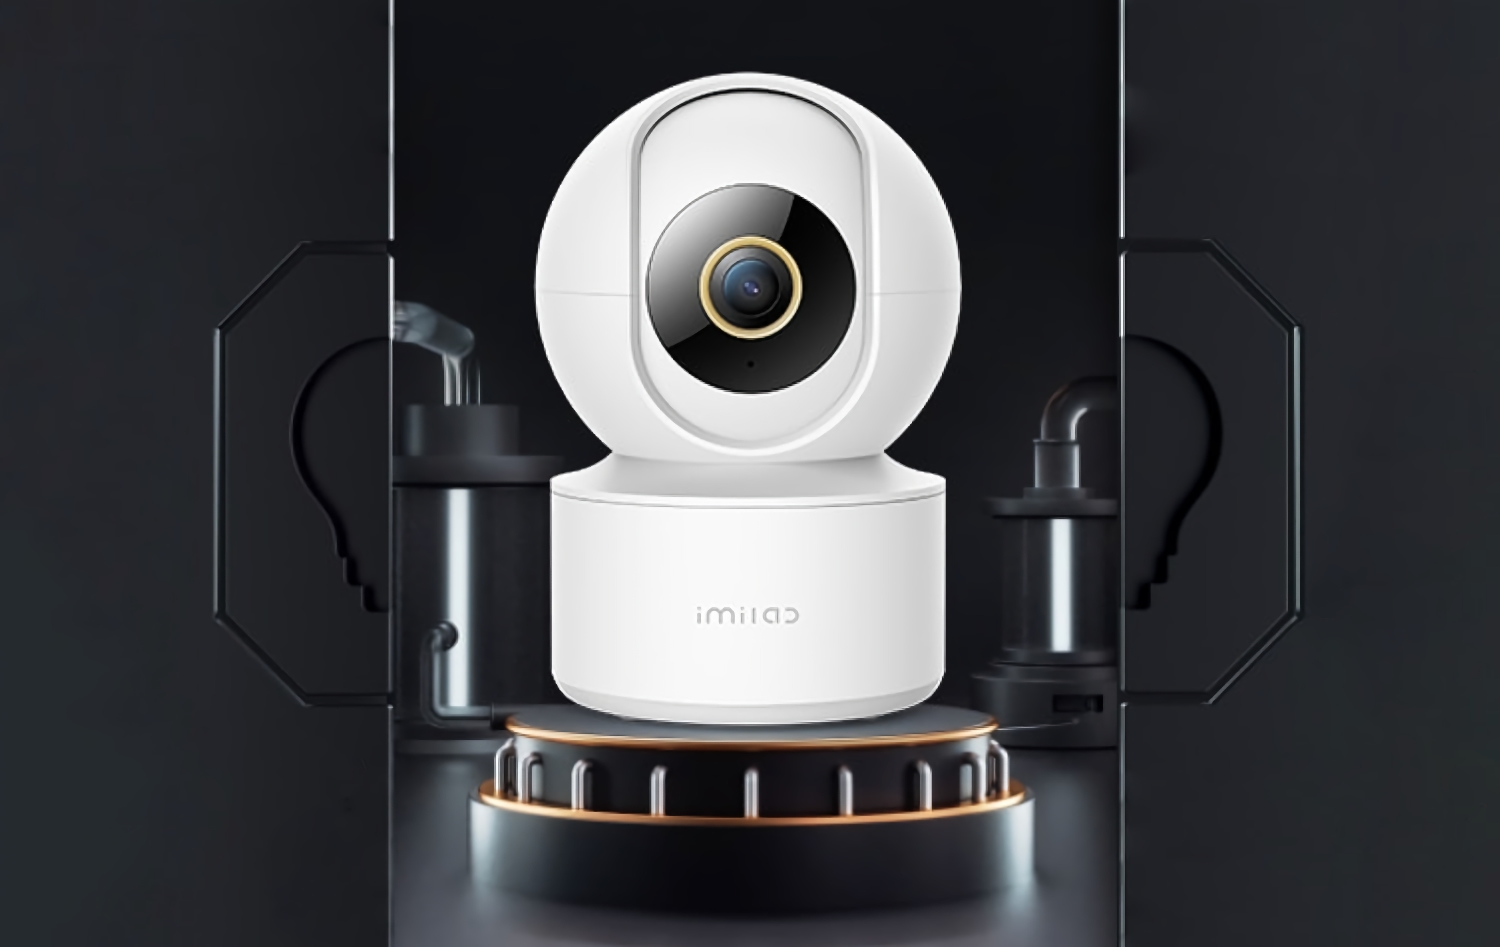 IMILAB C21: kamera IP 360 stopni z trybem nocnym i Asystentem Google za 29 dolarów